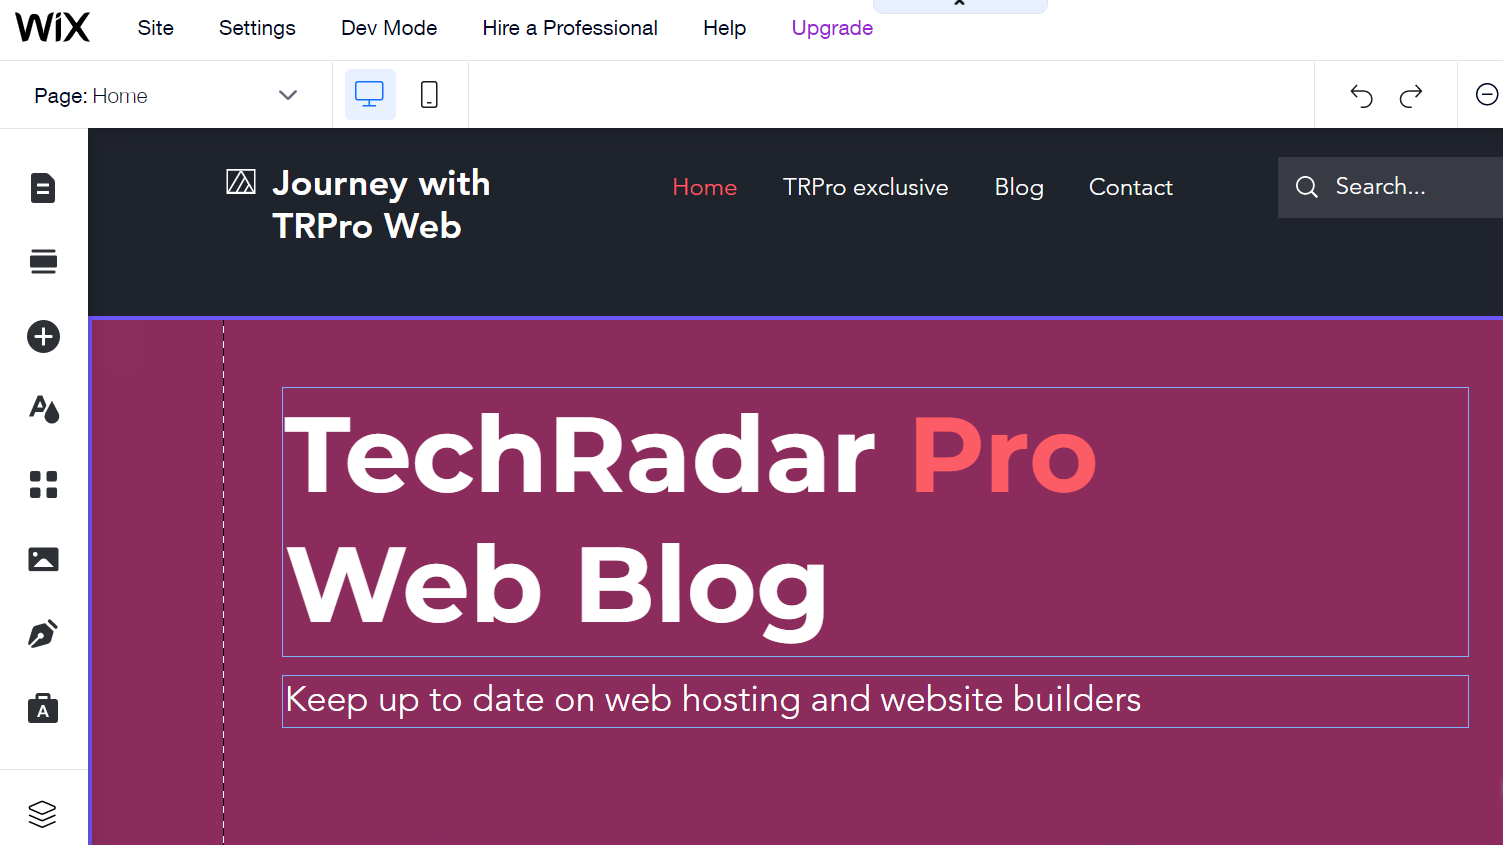 A снимок экрана нашего блога TechRadar Pro, созданного с помощью Wix